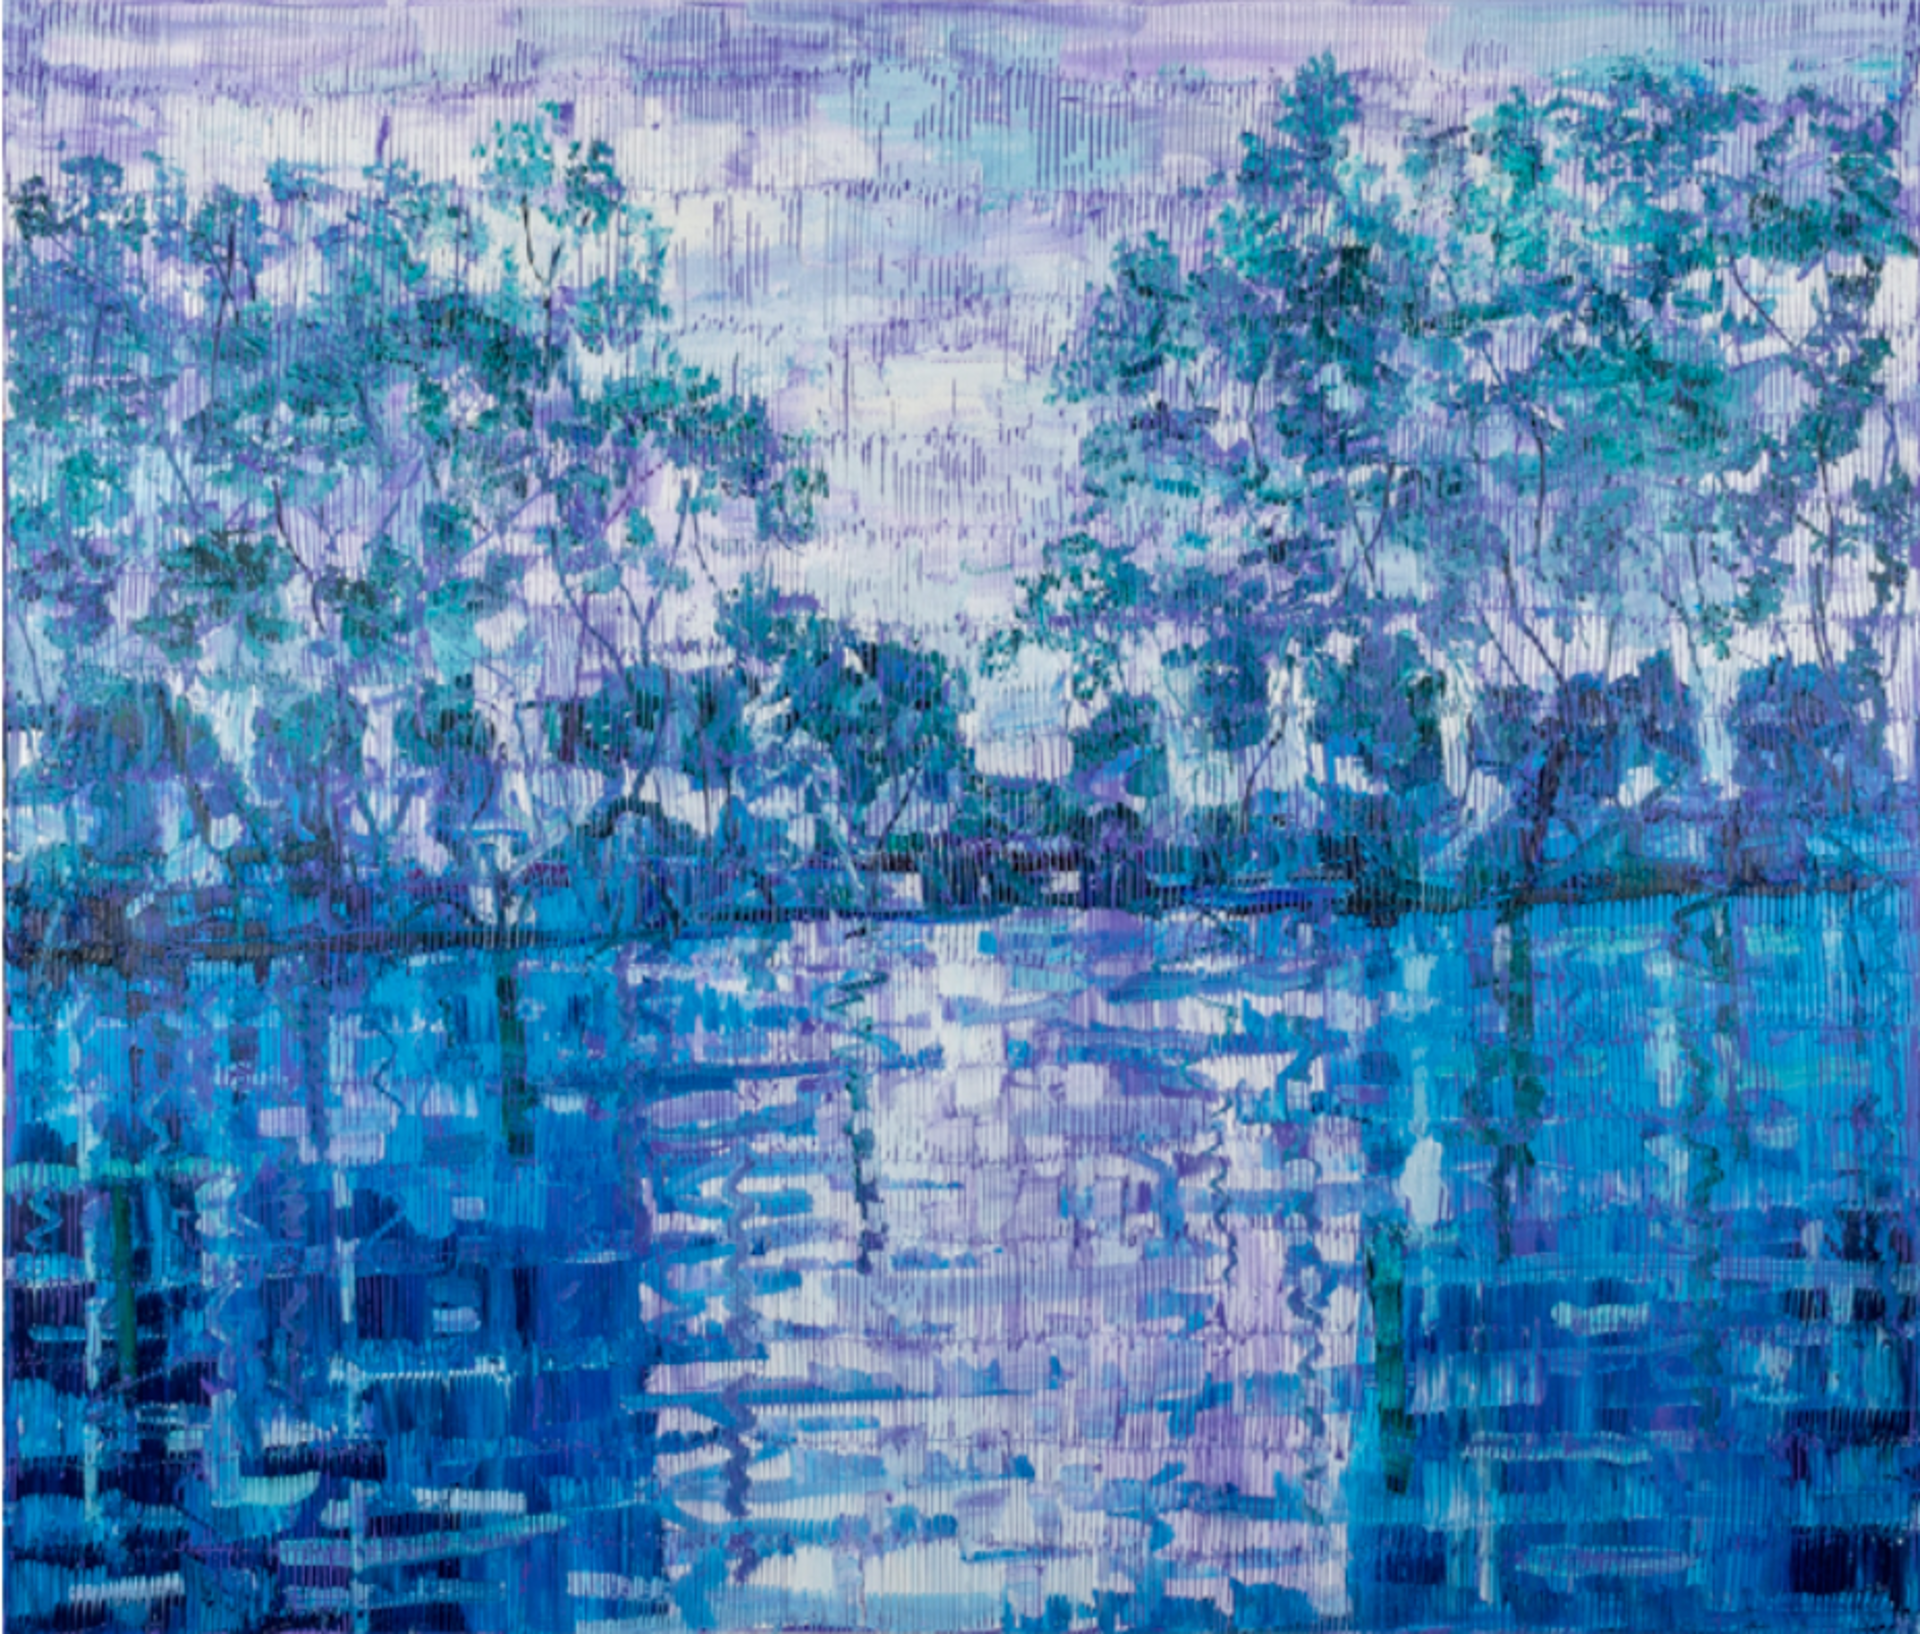 Hunt Slonem Art For Sale - Hunt Slonem Bayou Blue Oil On Canvas60 x 70 in